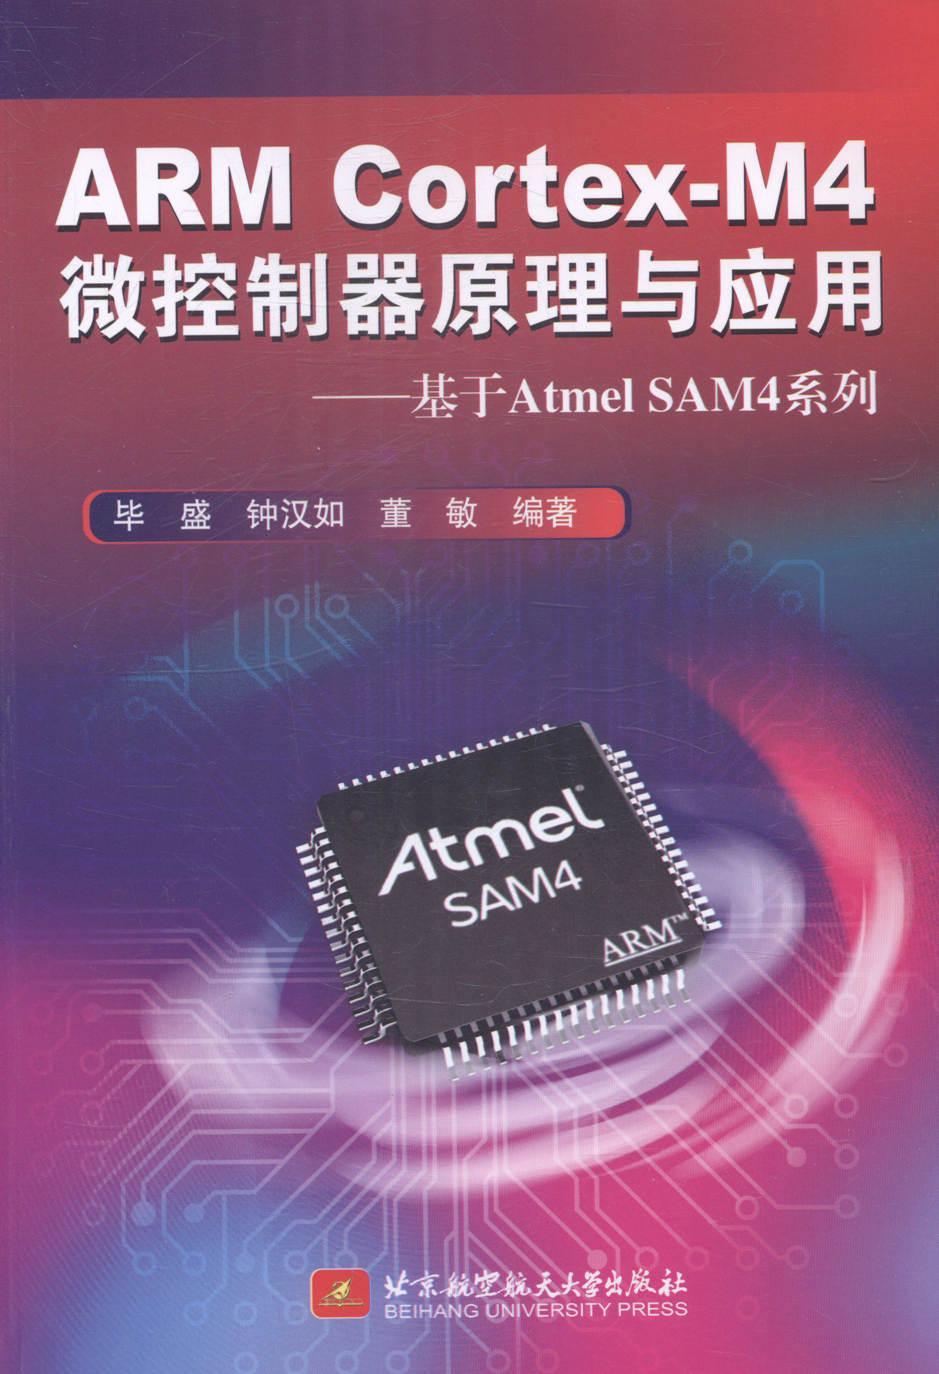 全新正版 ARM Cortex-M4微控制器原理与应用:基于Atmel SAM4系列 北京航空航天大学出版社 9787512413955